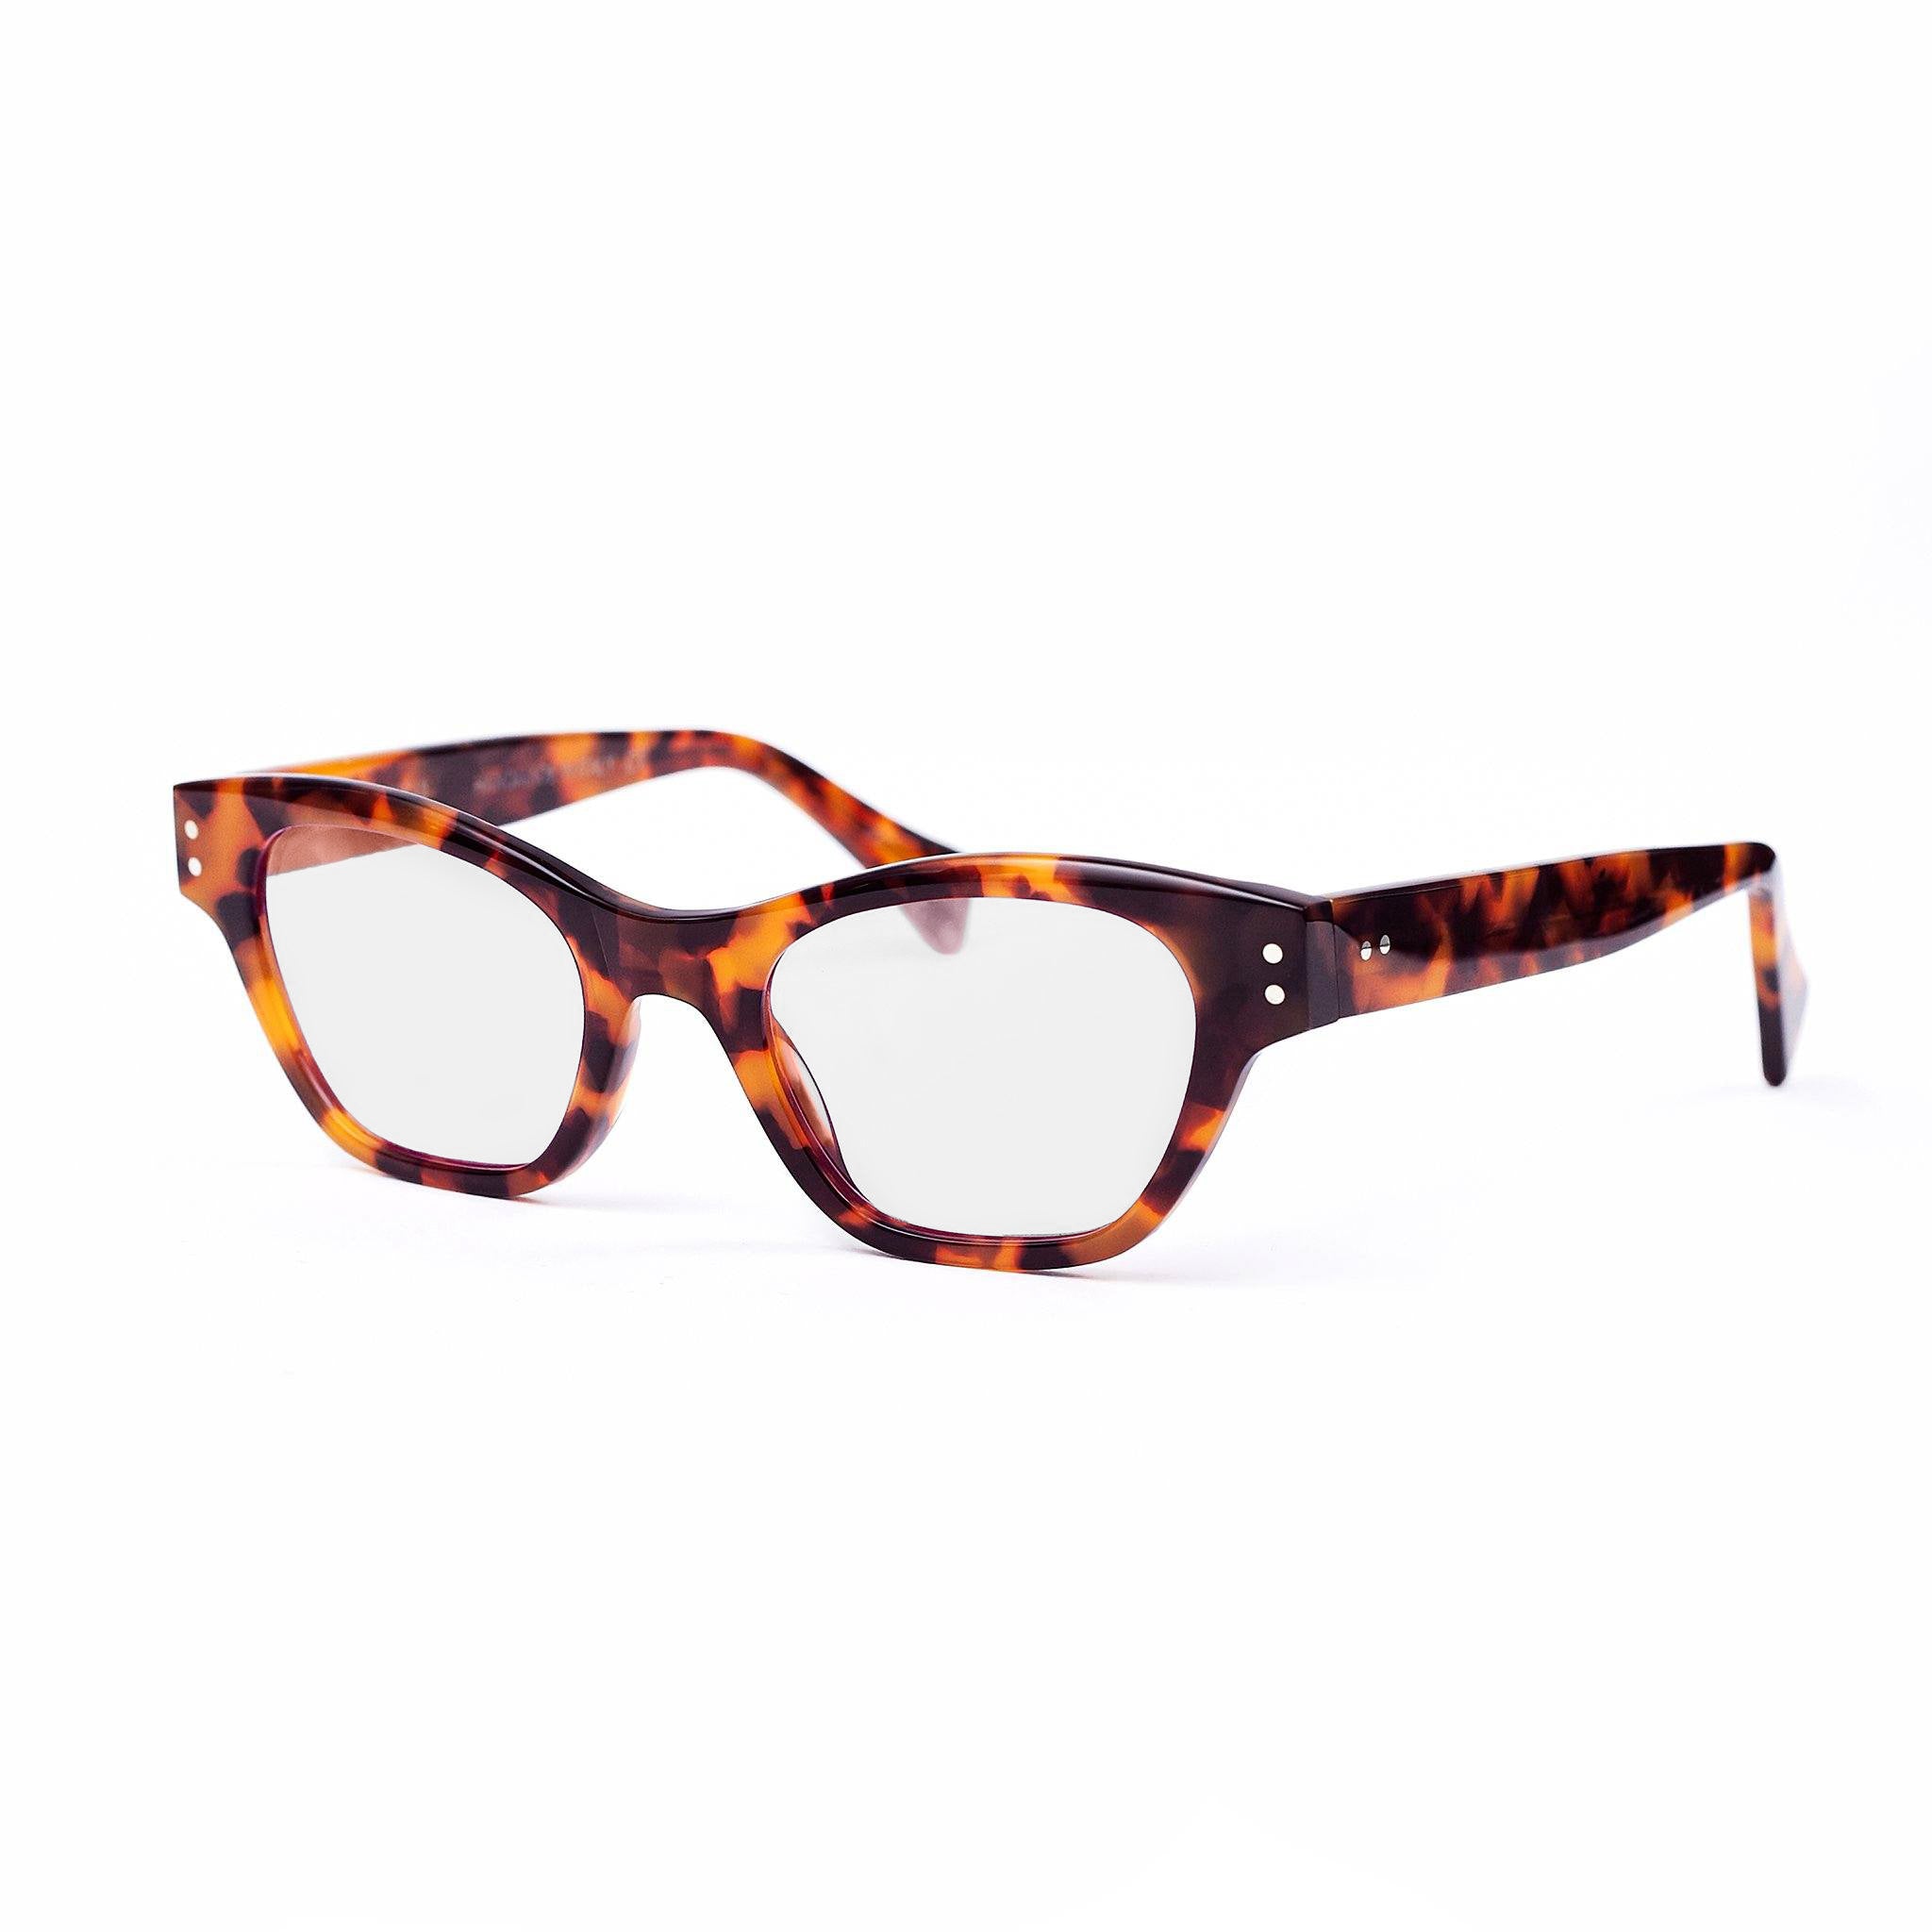 Ameos eyewear rima optical glasses with tortoise frames, unisex.